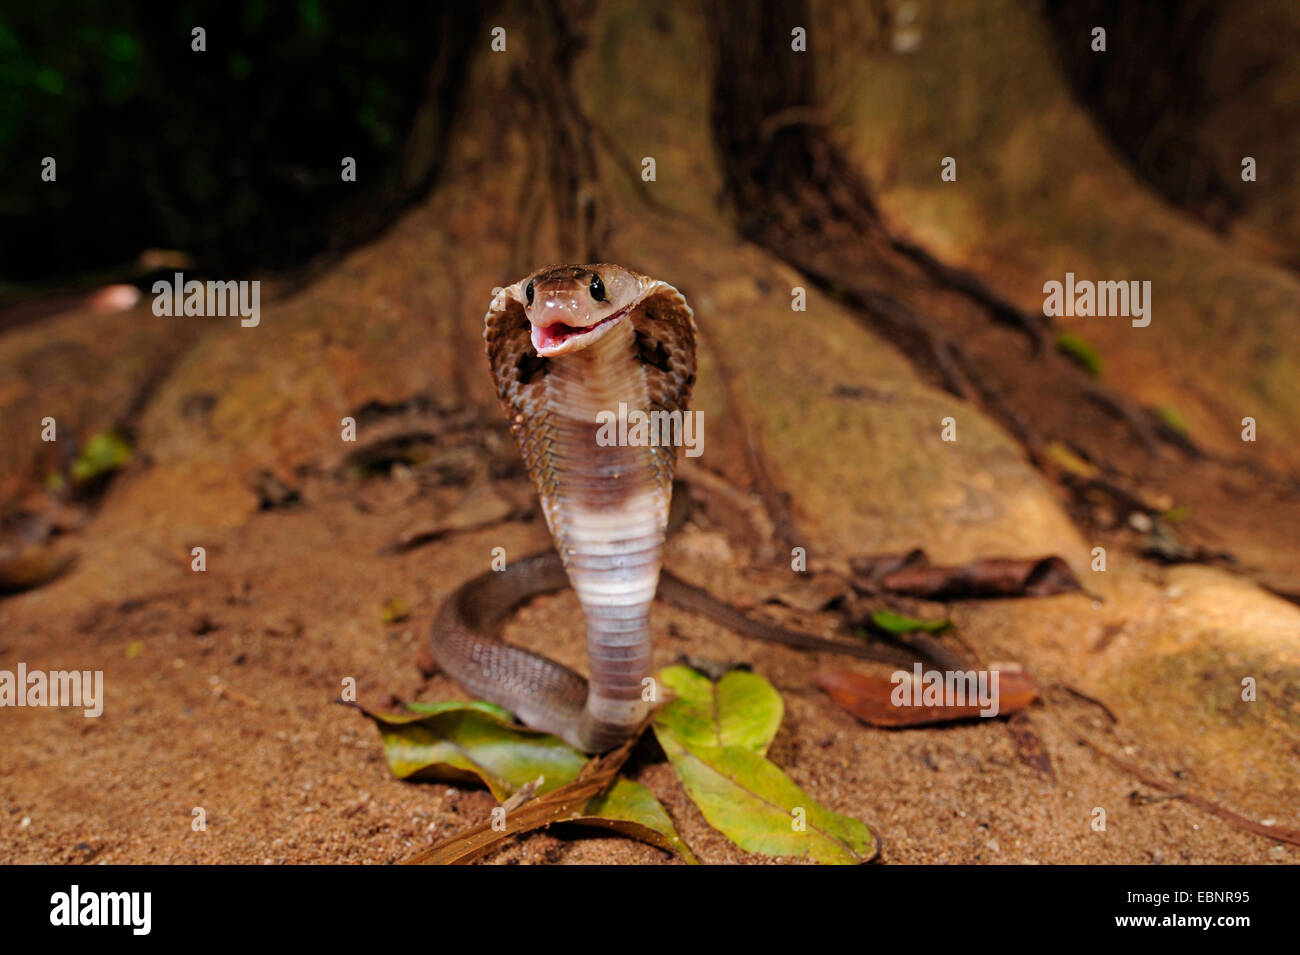 common cobra, Indian cobra (Naja naja), in defence posture, Sri Lanka Stock Photo